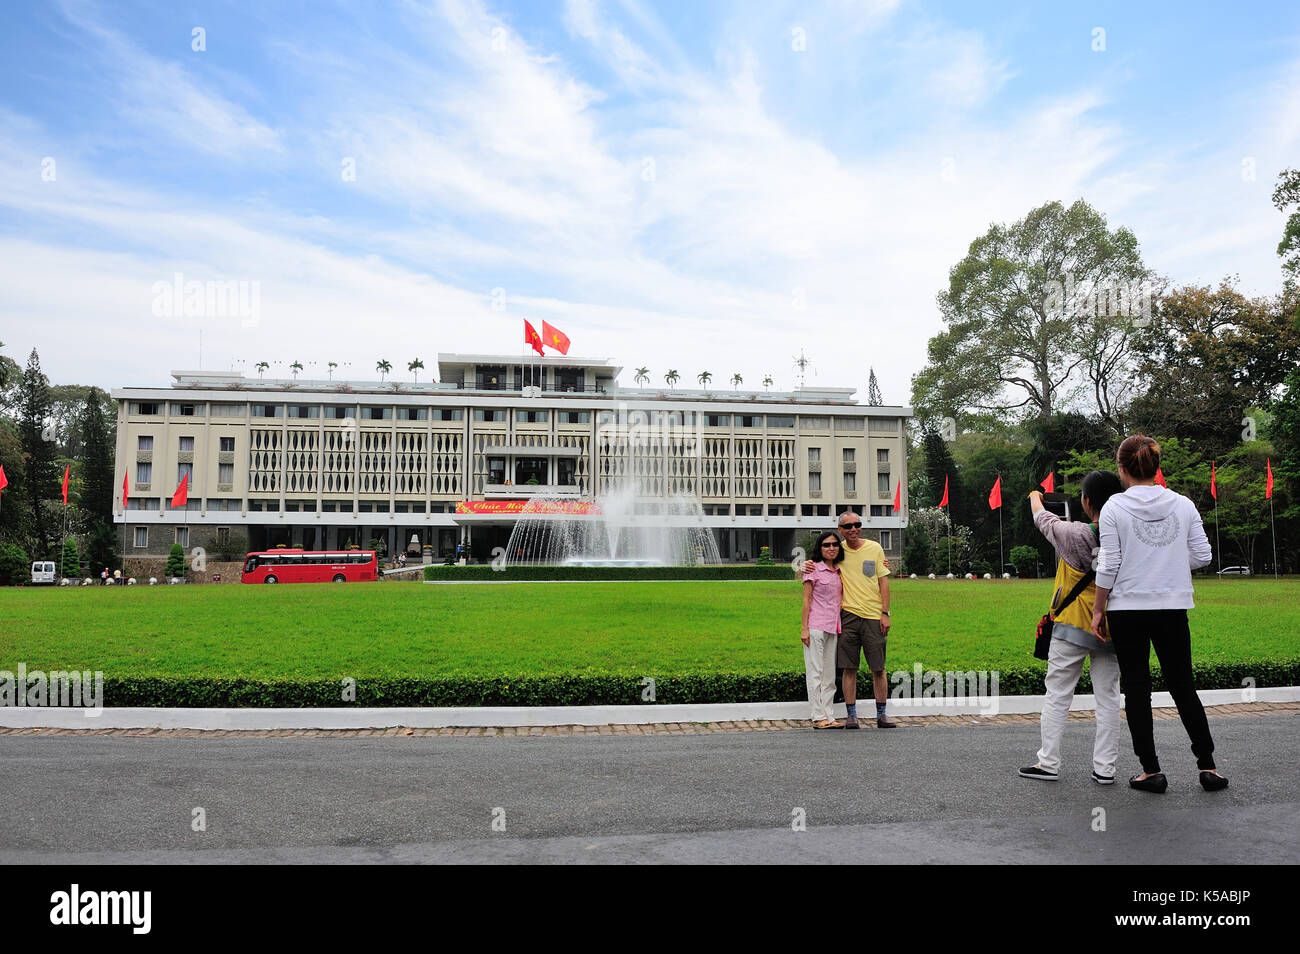 Ho Chi Minh, Vietnam - Feb 25,2015: Unabhängigkeit Palace in Ho Chi Minh City, Vietnam. Unabhängigkeit Palace ist als Palast der Wiedervereinigung bekannt und wurde Buil Stockfoto